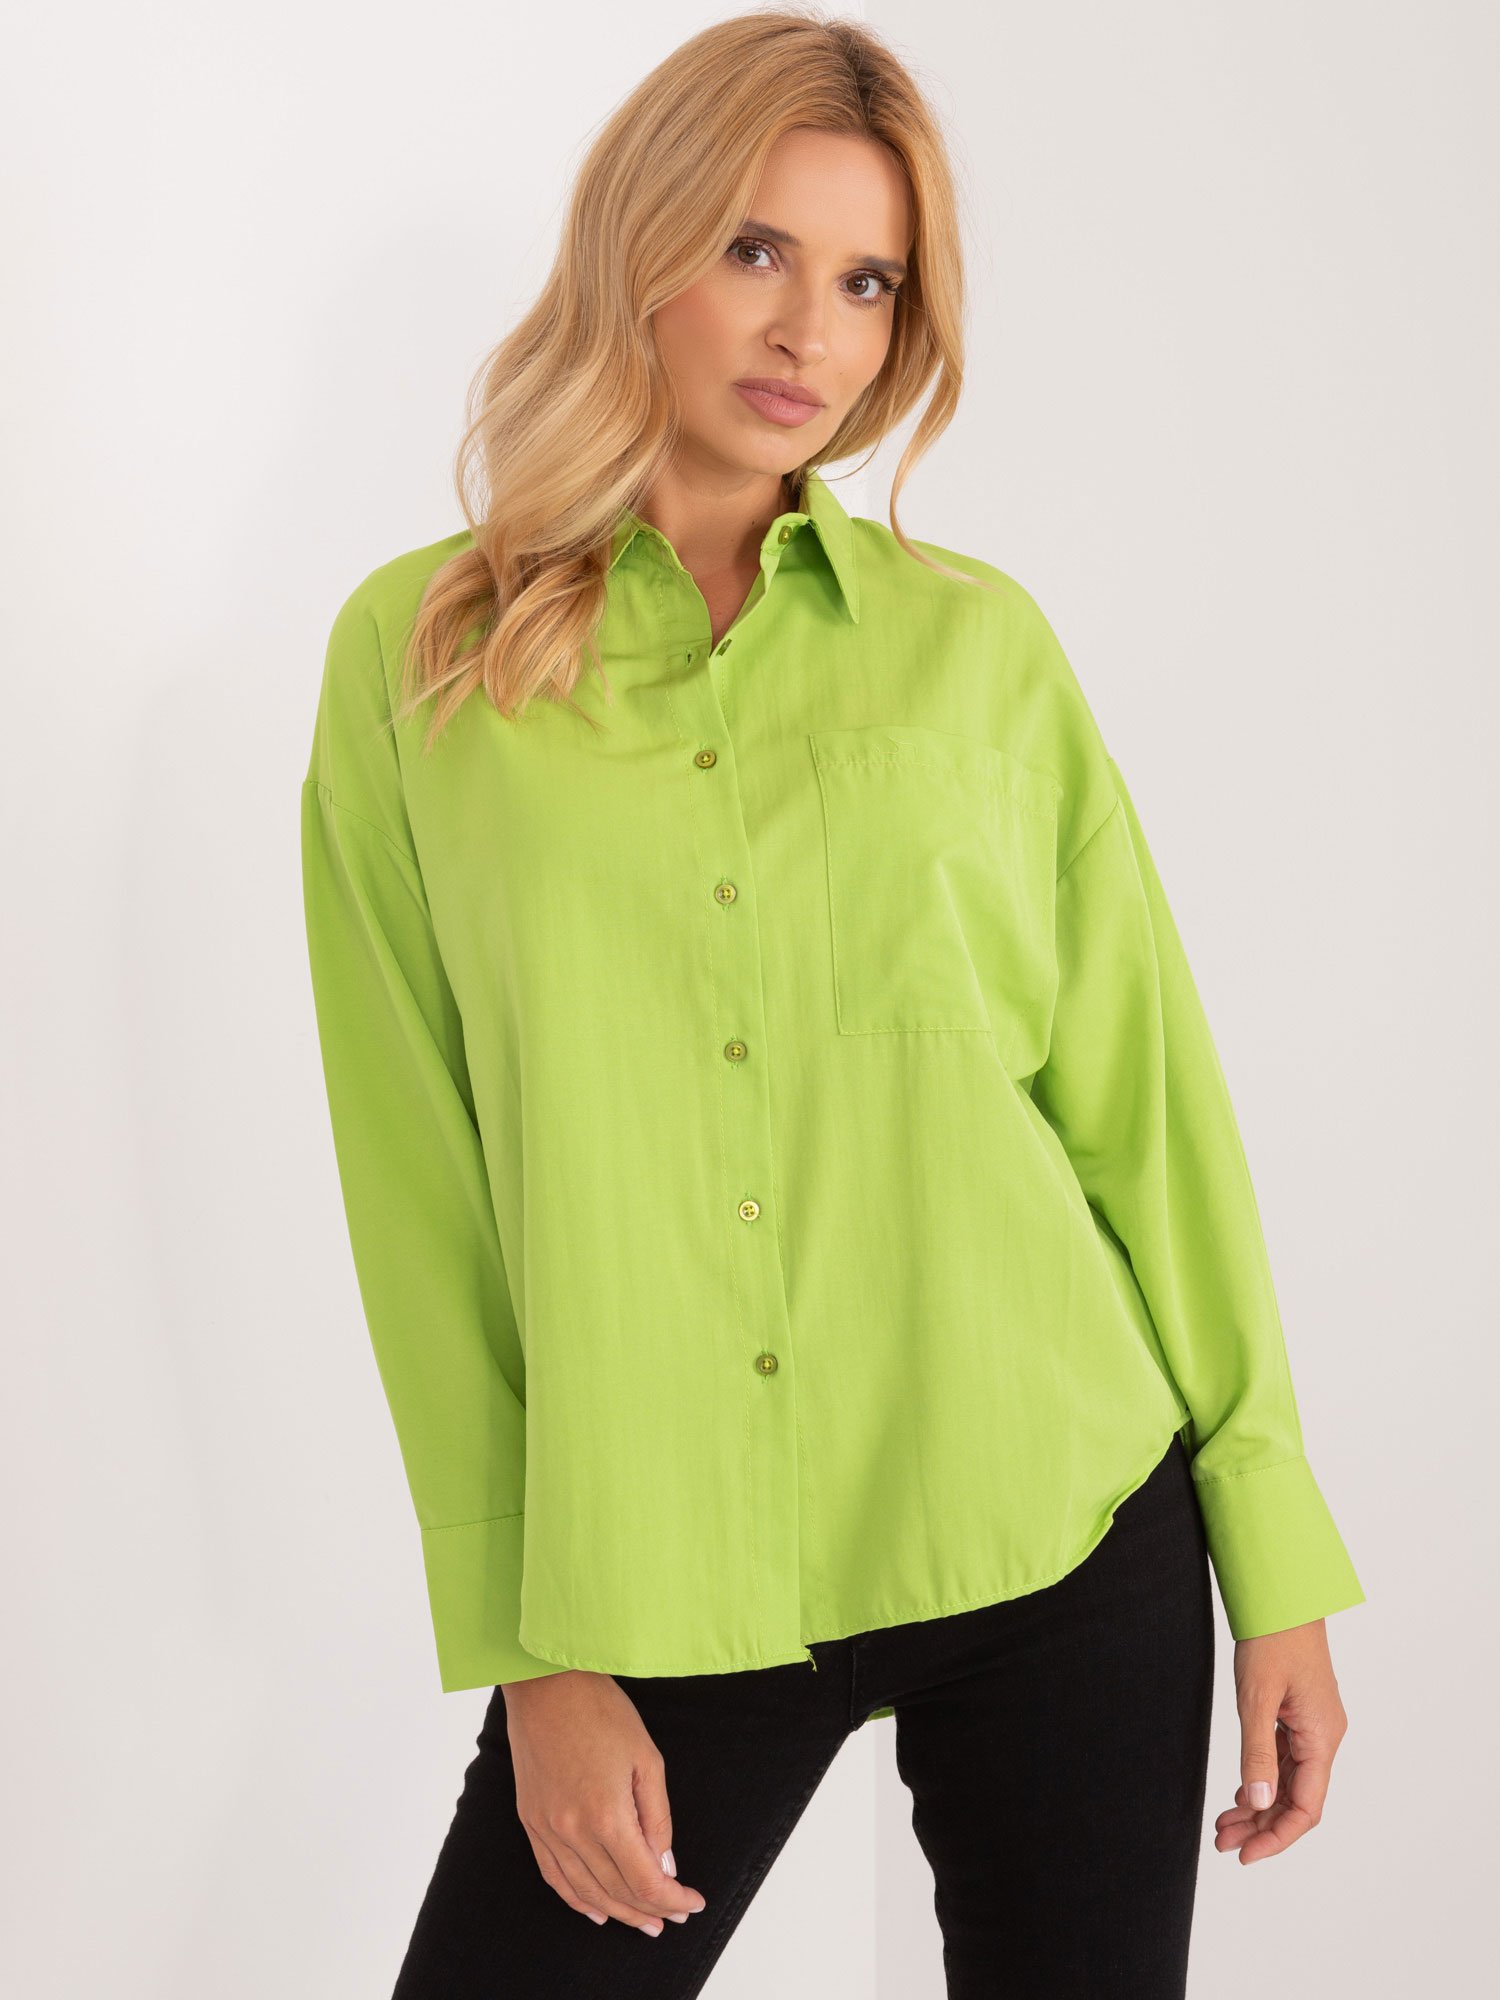 Limetková oversize košile s límečkem